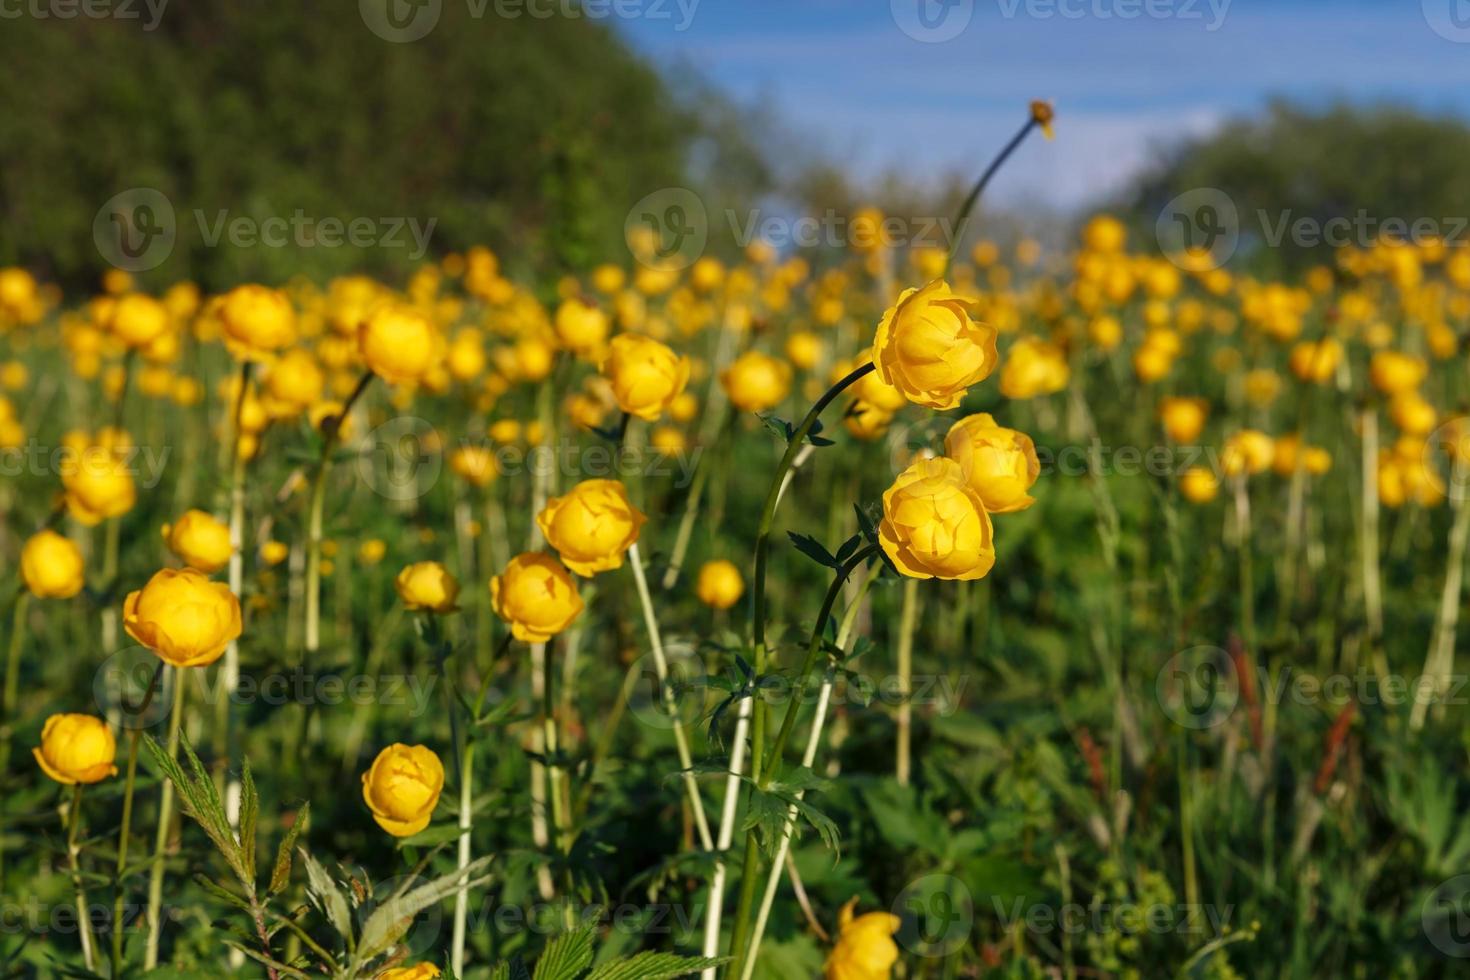 Trollius europaeus jaune. le nom commun de certaines espèces est globeflower ou globe flower photo